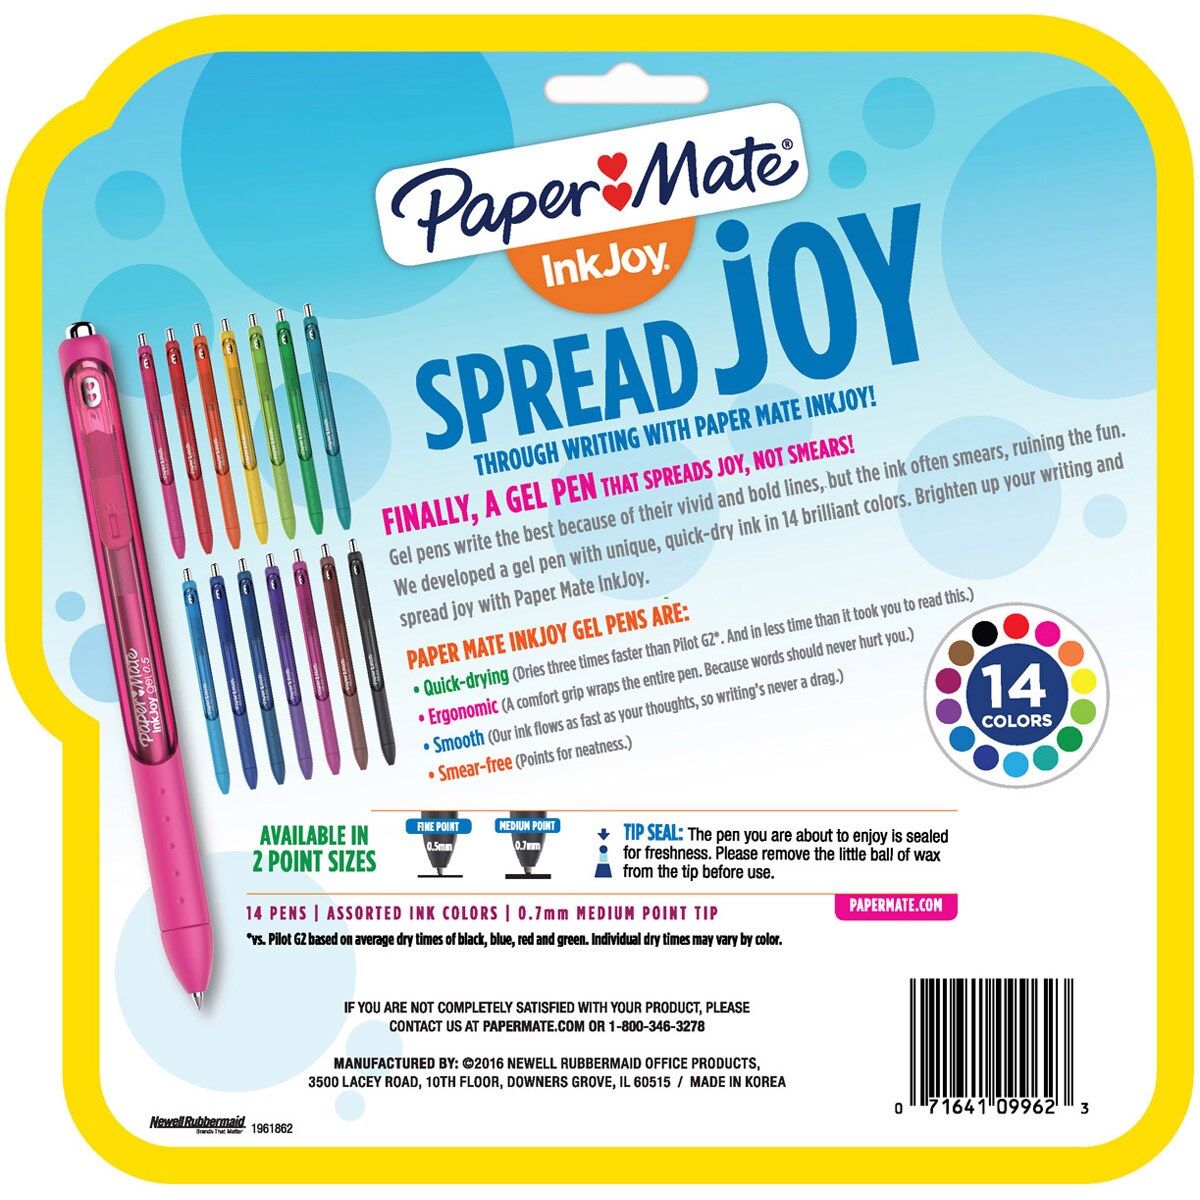 Paper Mate InkJoy Gel Pens 0.7 Med. Assorted Ink Colors, 14 Pens